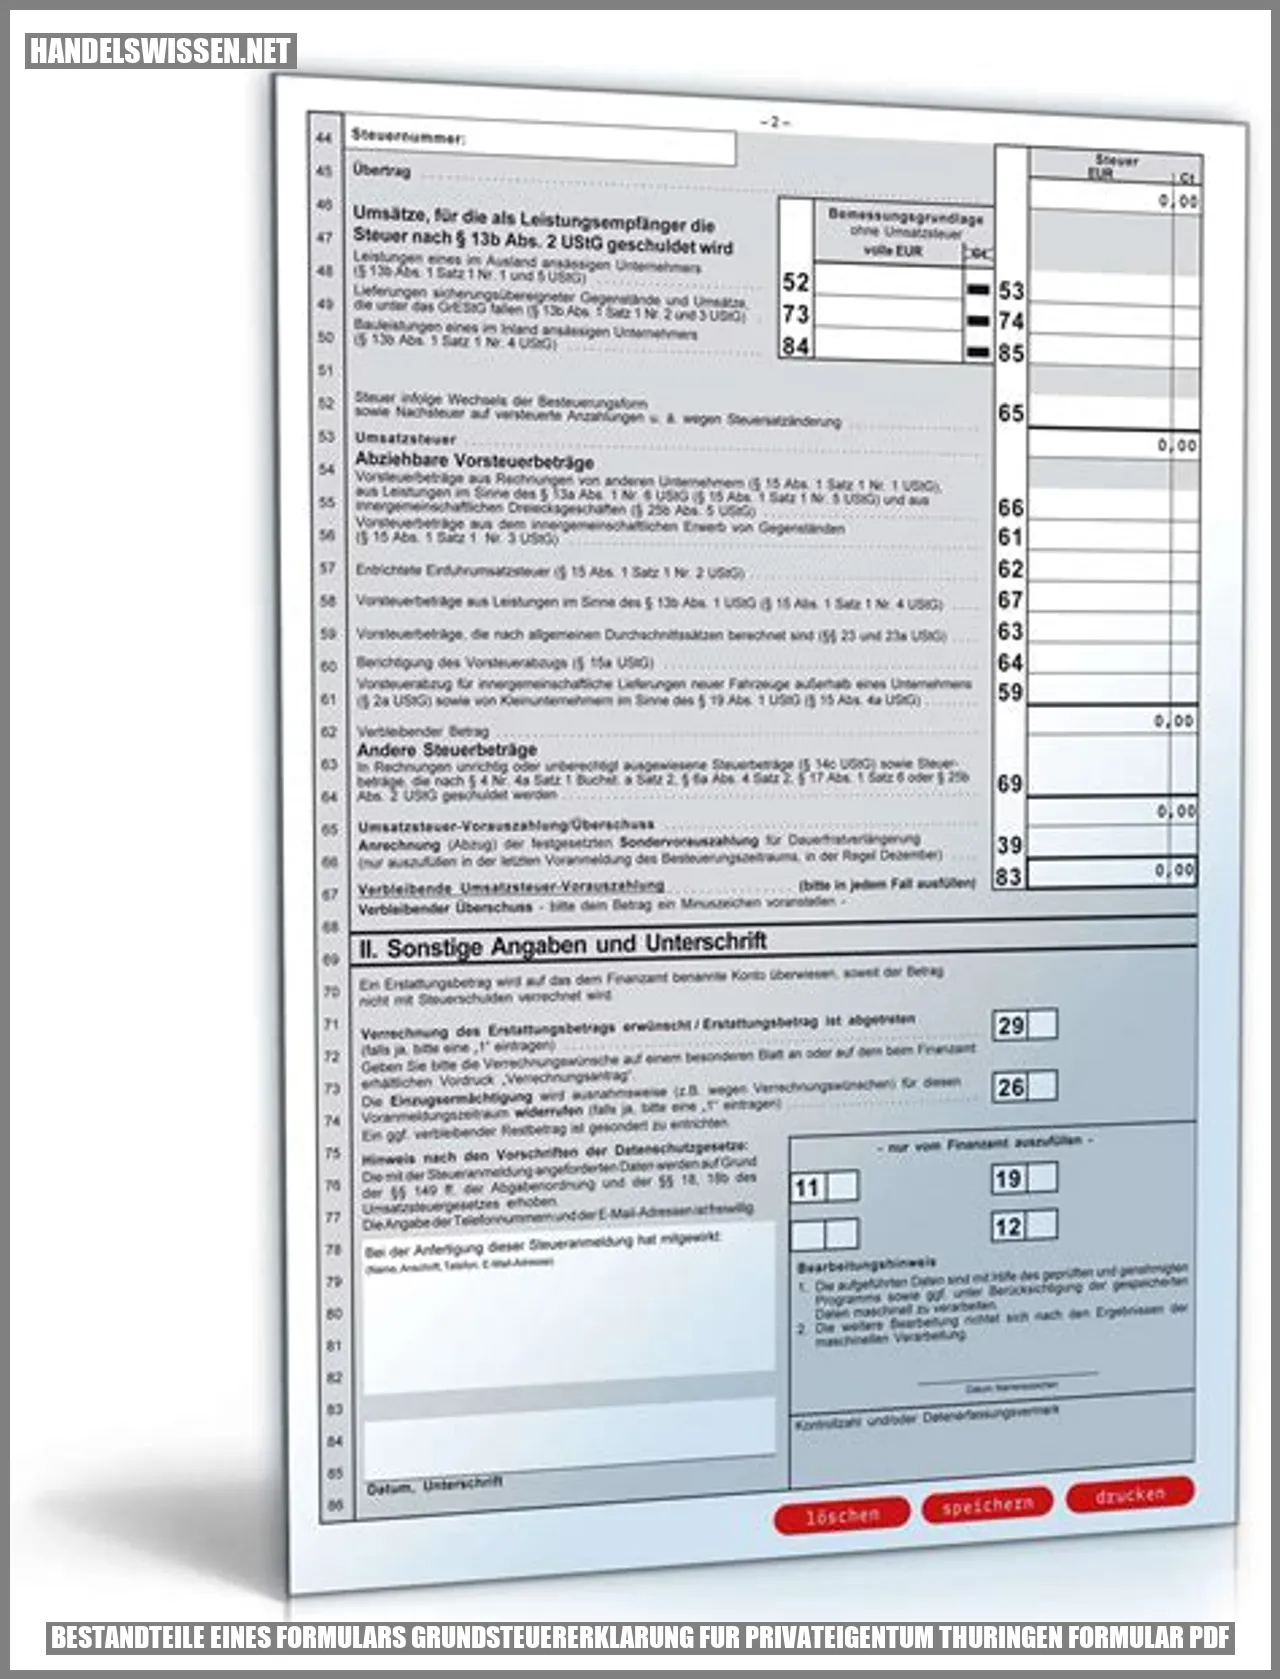 Bestandteile eines Formulars Grundsteuererklärung für Privatbesitz in Thüringen Formular PDF